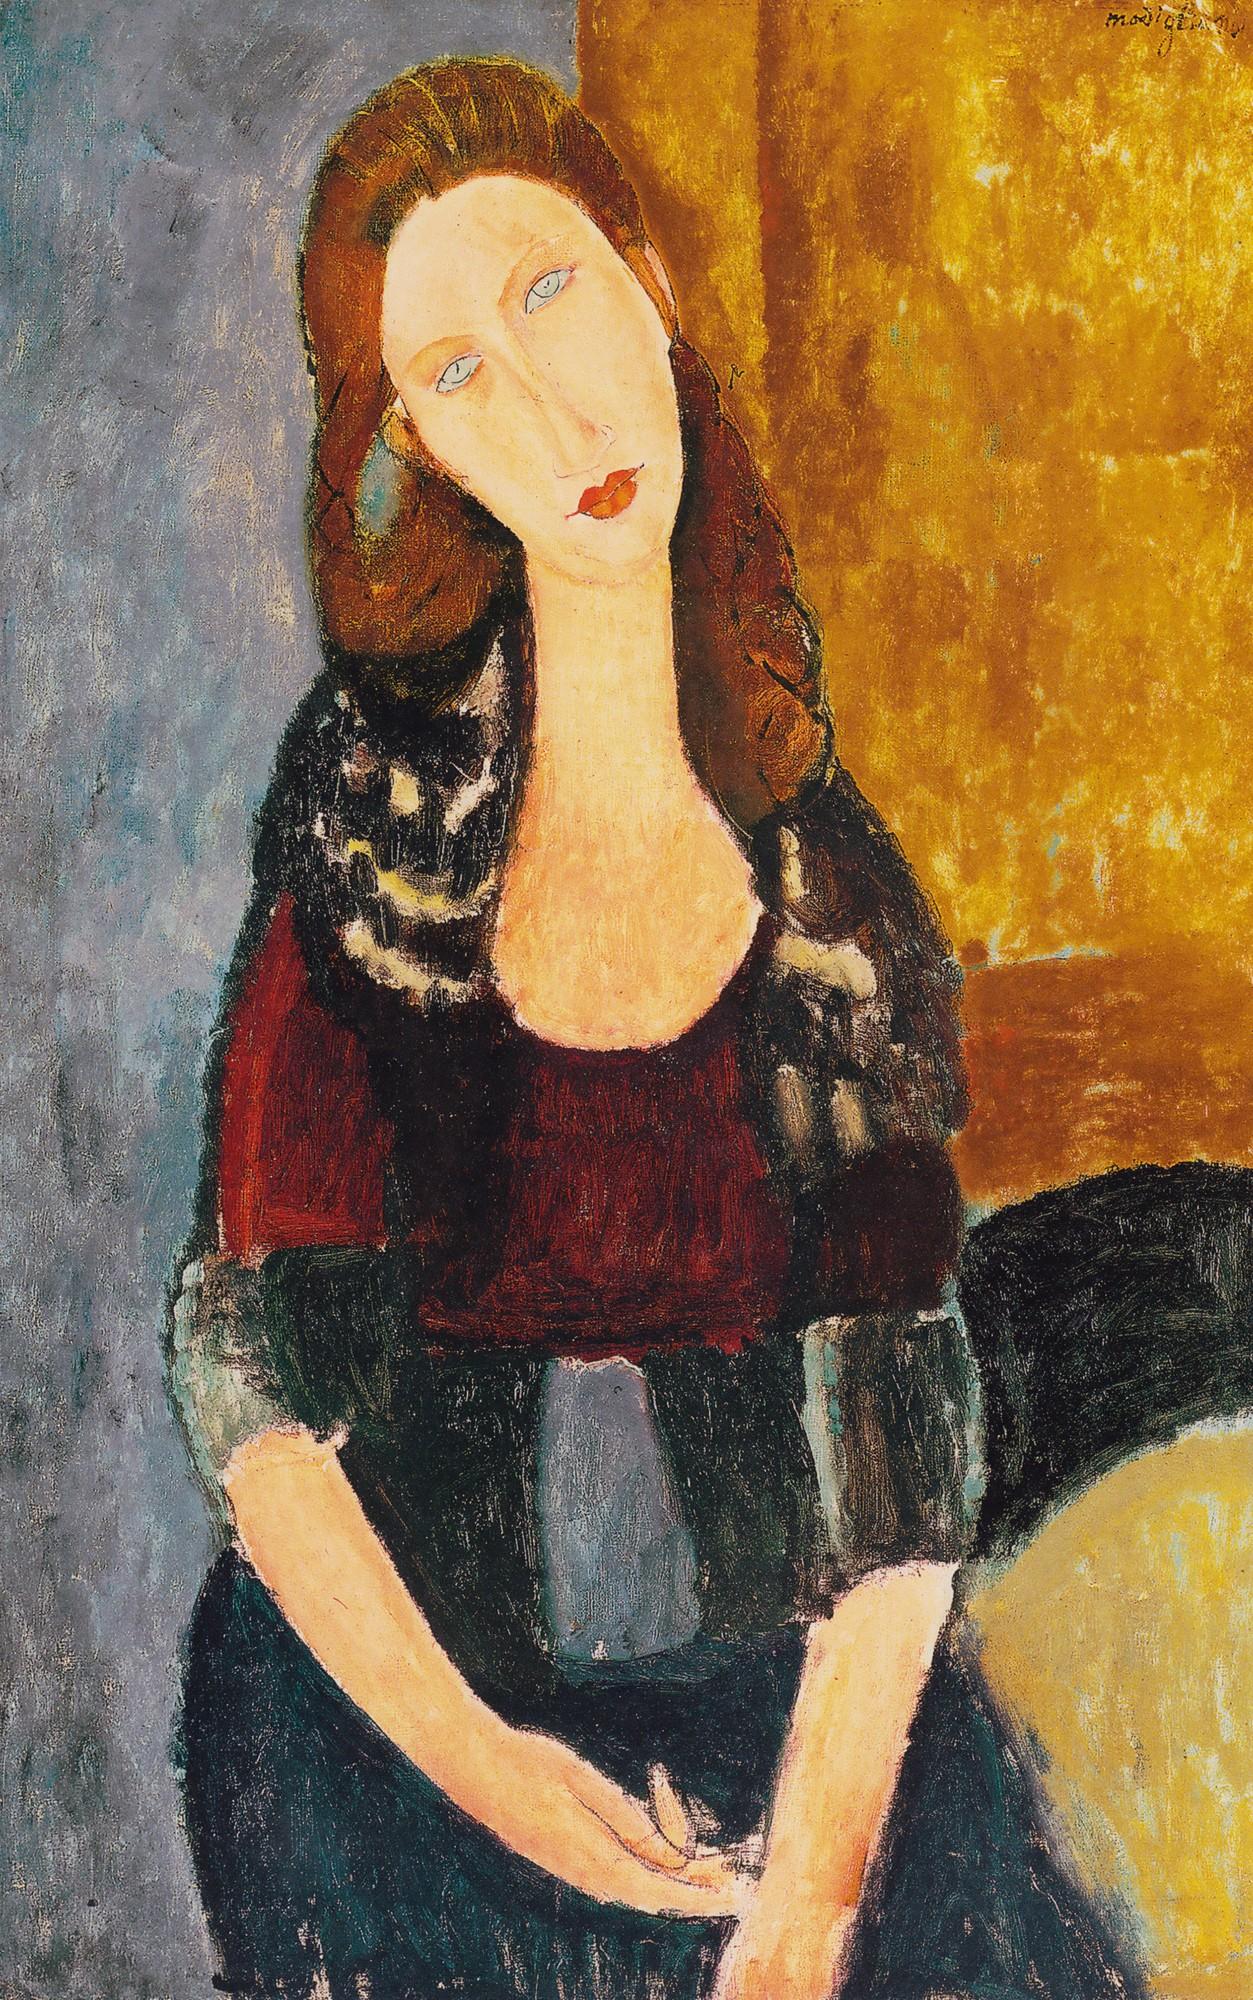 画布上的情书:莫迪里阿尼的艺术与情感